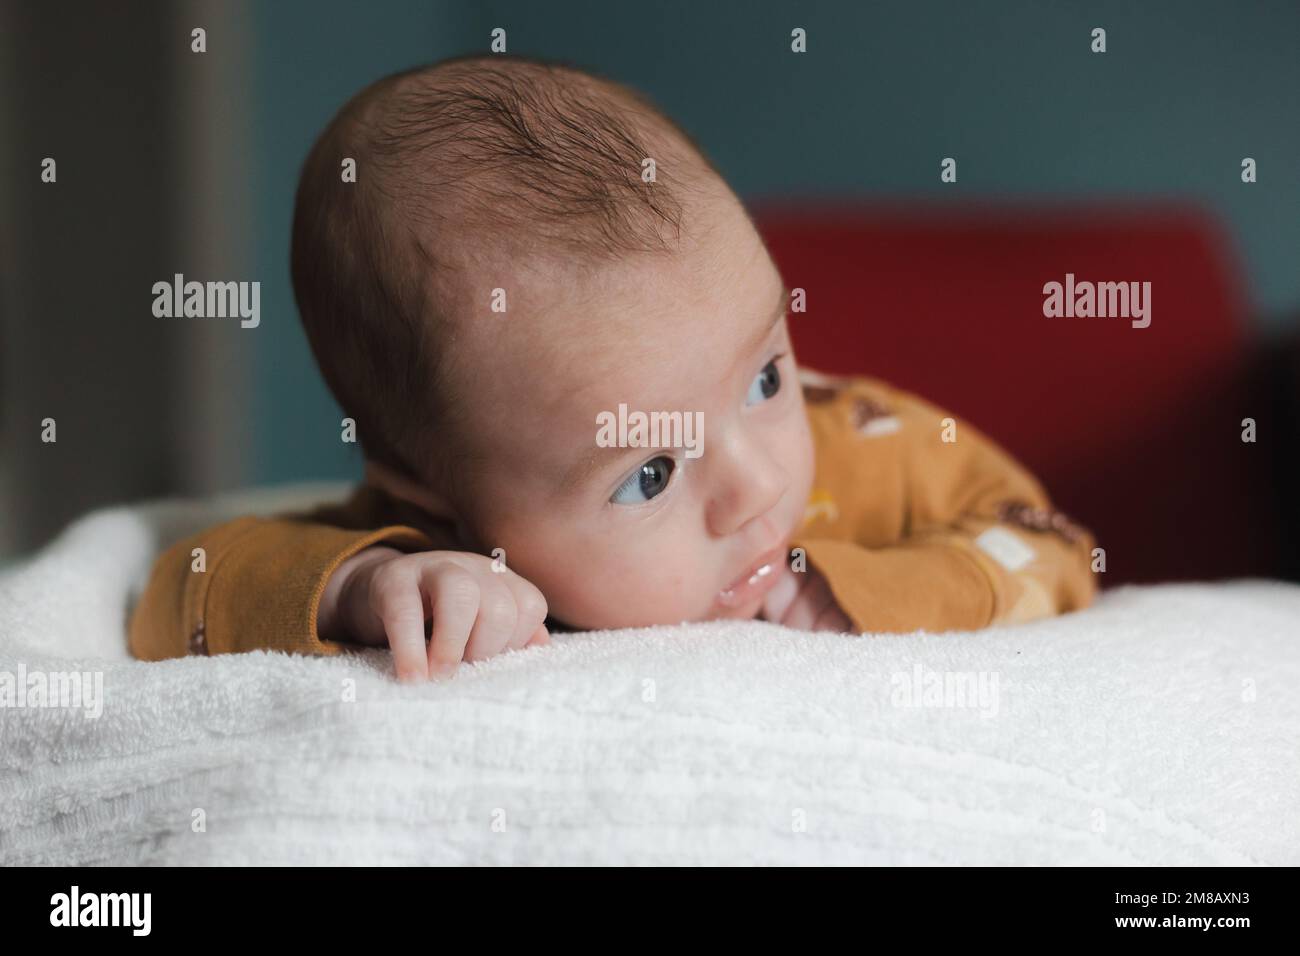 Bébé mignon garçon de 3 à 6 mois allongé sur son ventre et regardant loin de l'appareil photo avec une expression faciale sérieuse Banque D'Images